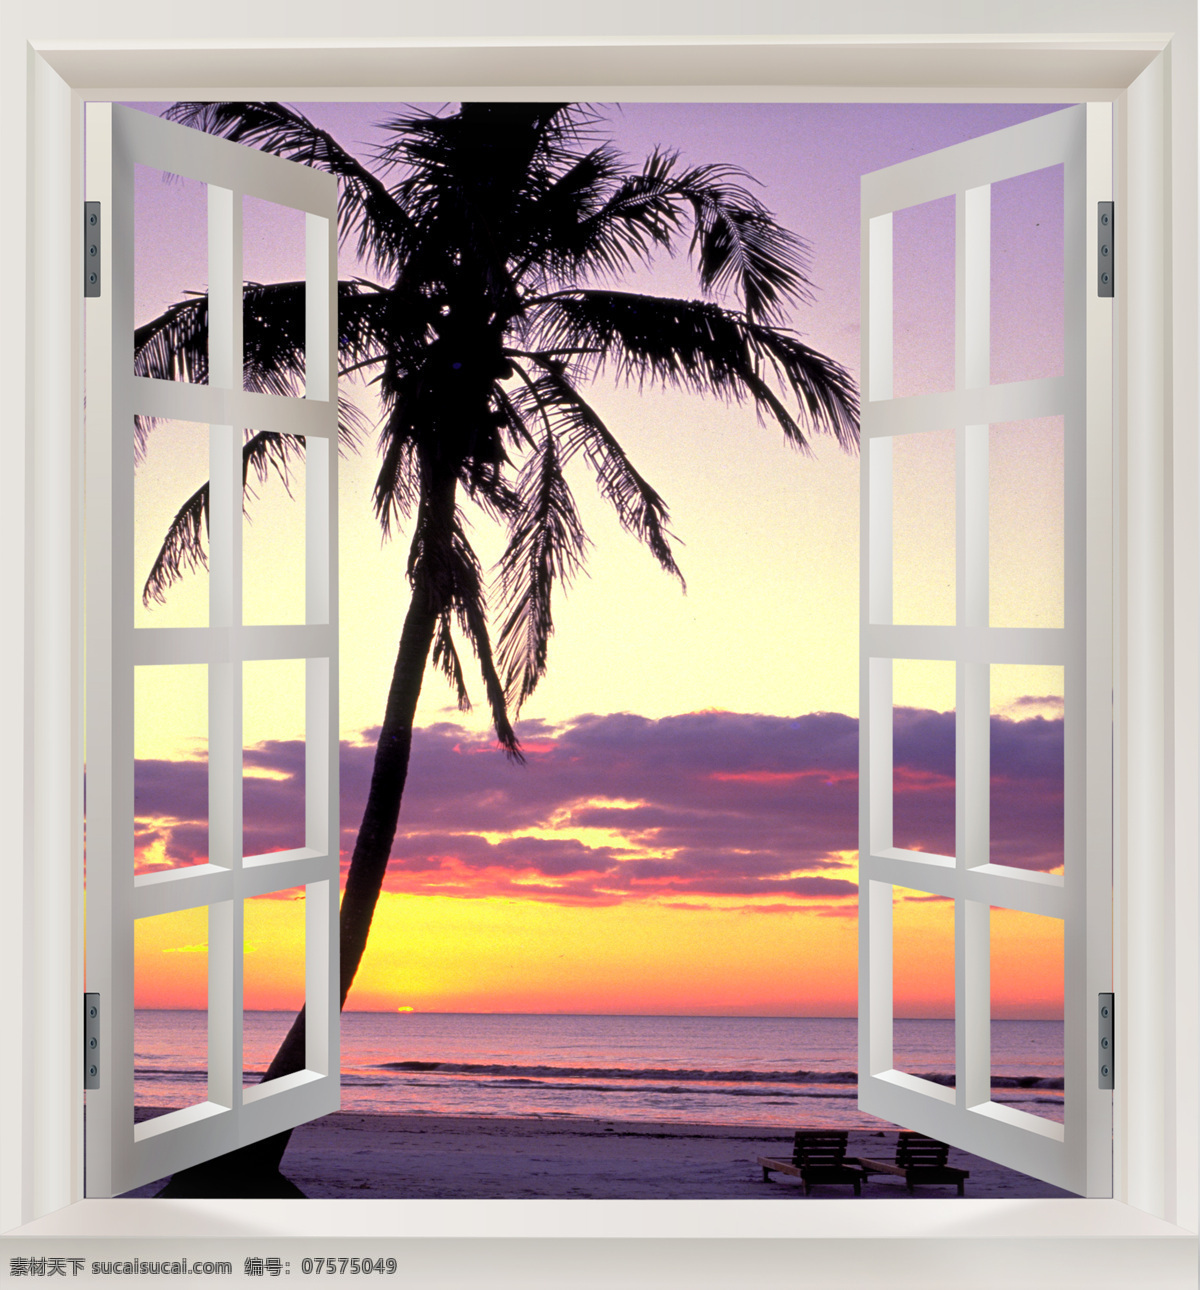 窗外风景 窗外 窗台 窗框 风景 自然景观 自然风光 自然风景 设计图库 白色窗户 天空 云朵 椰子树 大海 海边 海南风光 夕阳 梦境